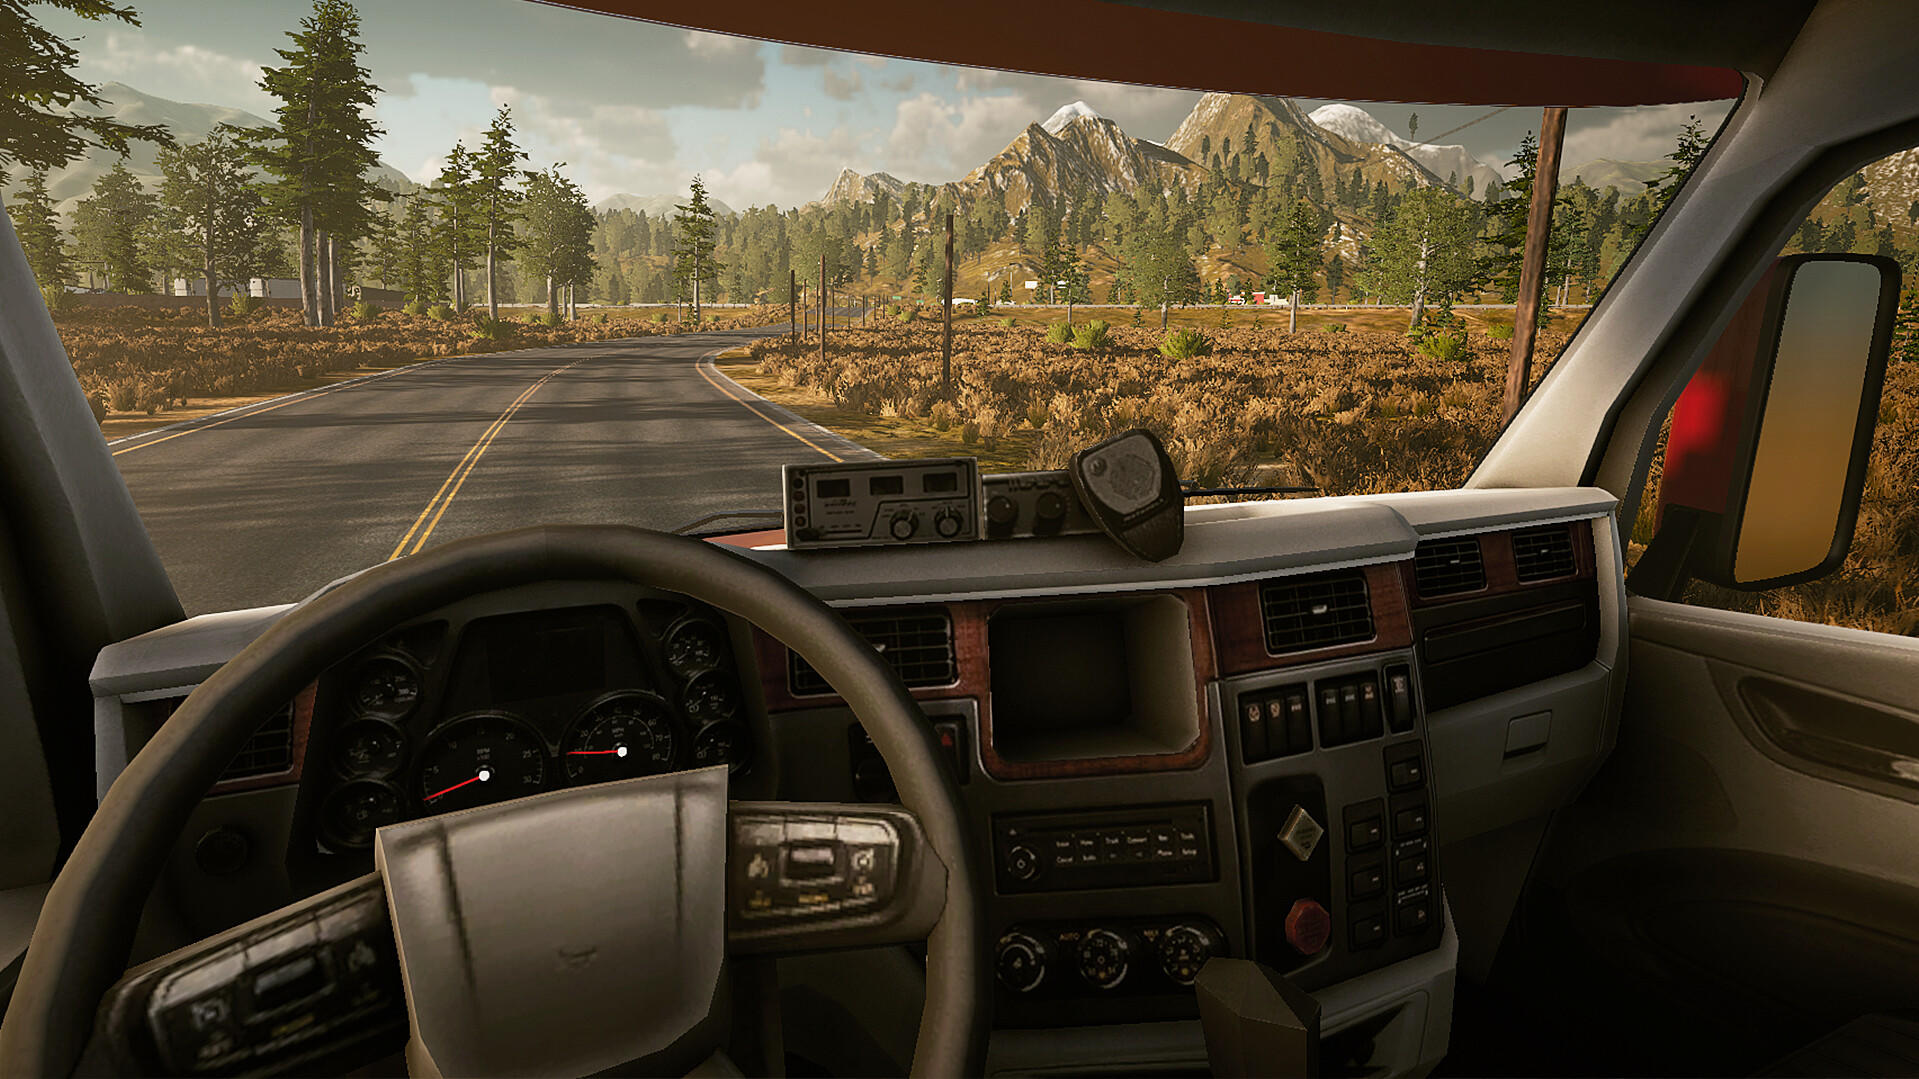 Screenshot of Dealer Simulator